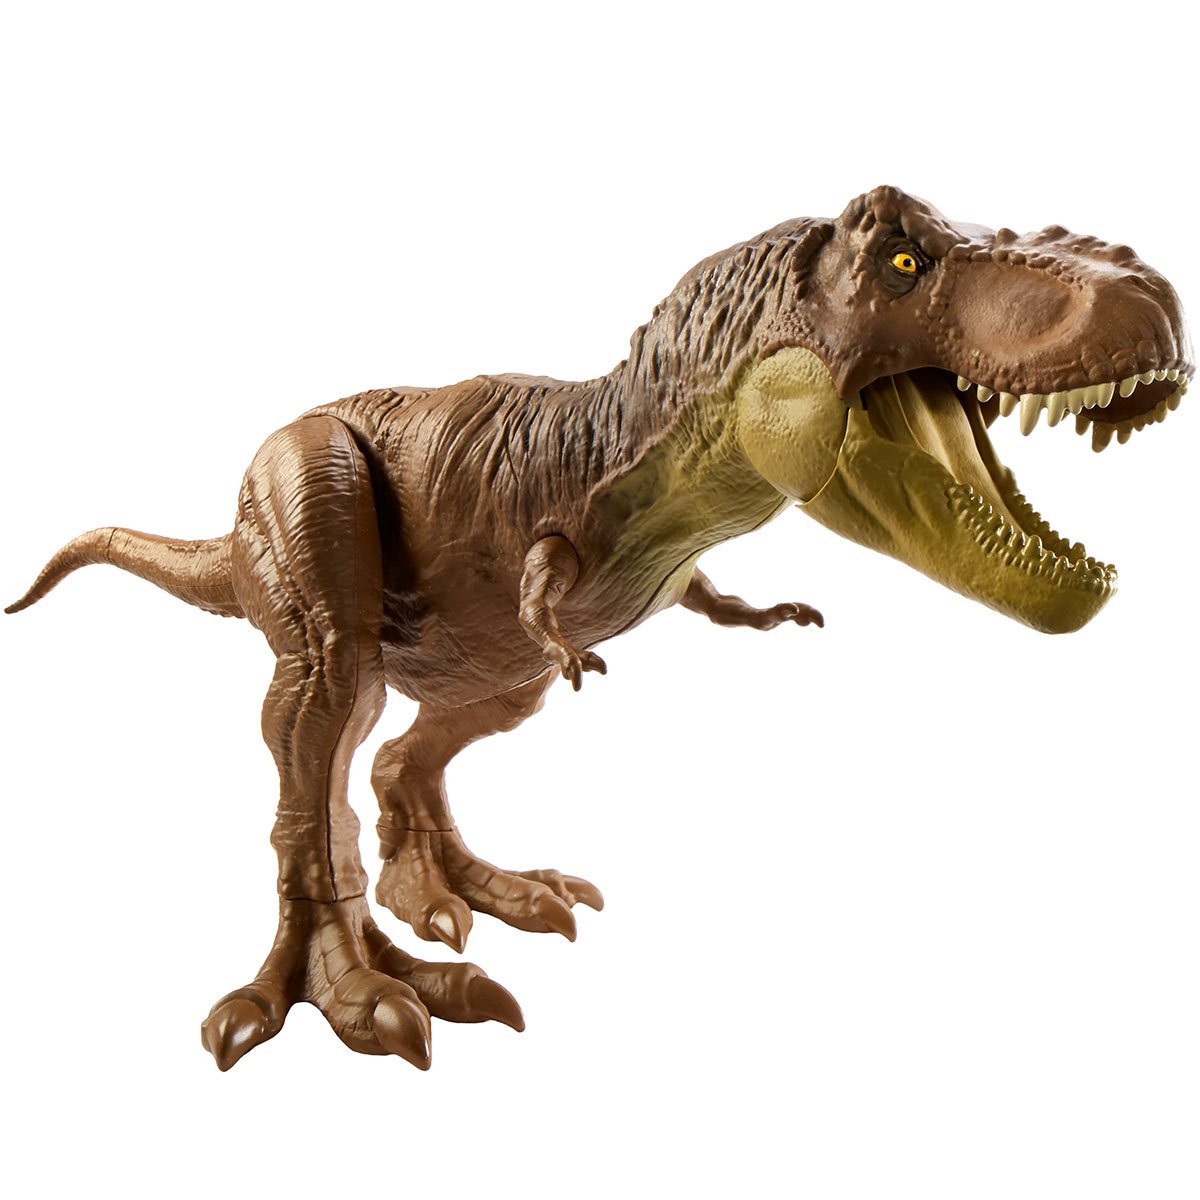 Jurassic World Dino Trackers - Mattel - Habitat Defender Triceratops